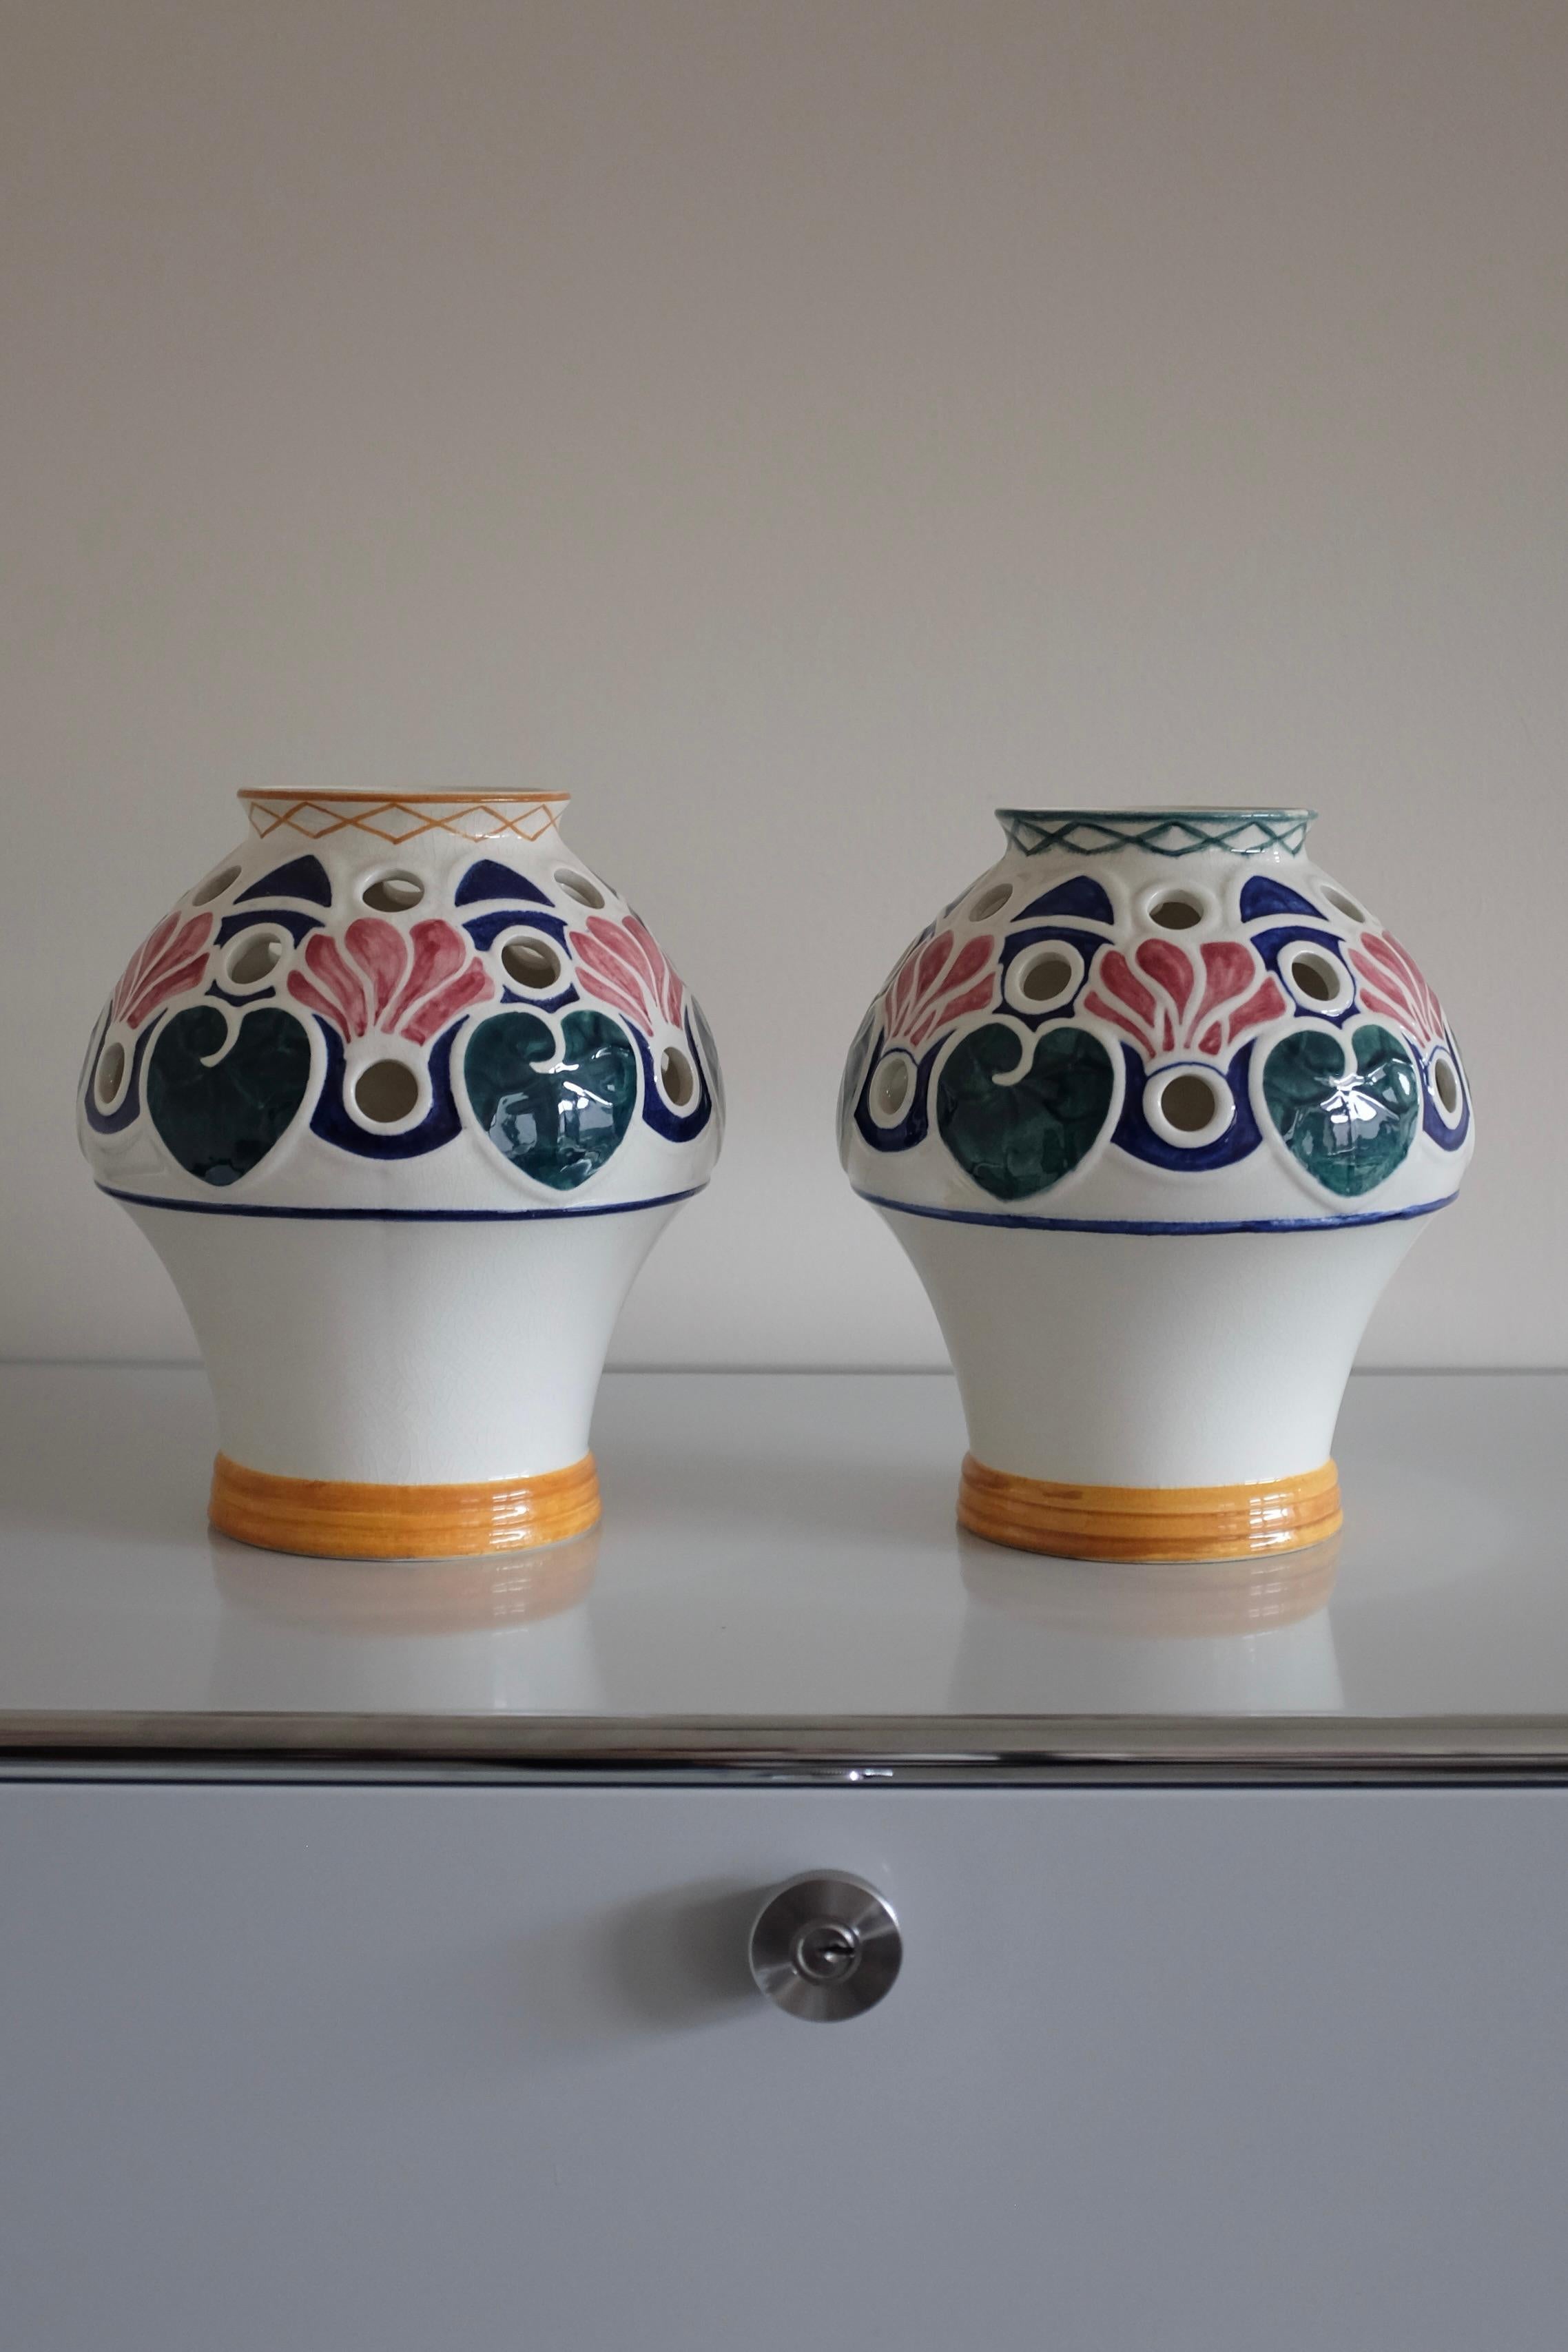 Superbe et rare ensemble de vases du début du 20e siècle par le designer suédois Alf Wallander pour Rörstrand. Comme beaucoup de pièces en céramique d'Alf Wallanders, ces vases sont ornés d'un motif floral inspiré de l'art nouveau, dans des couleurs